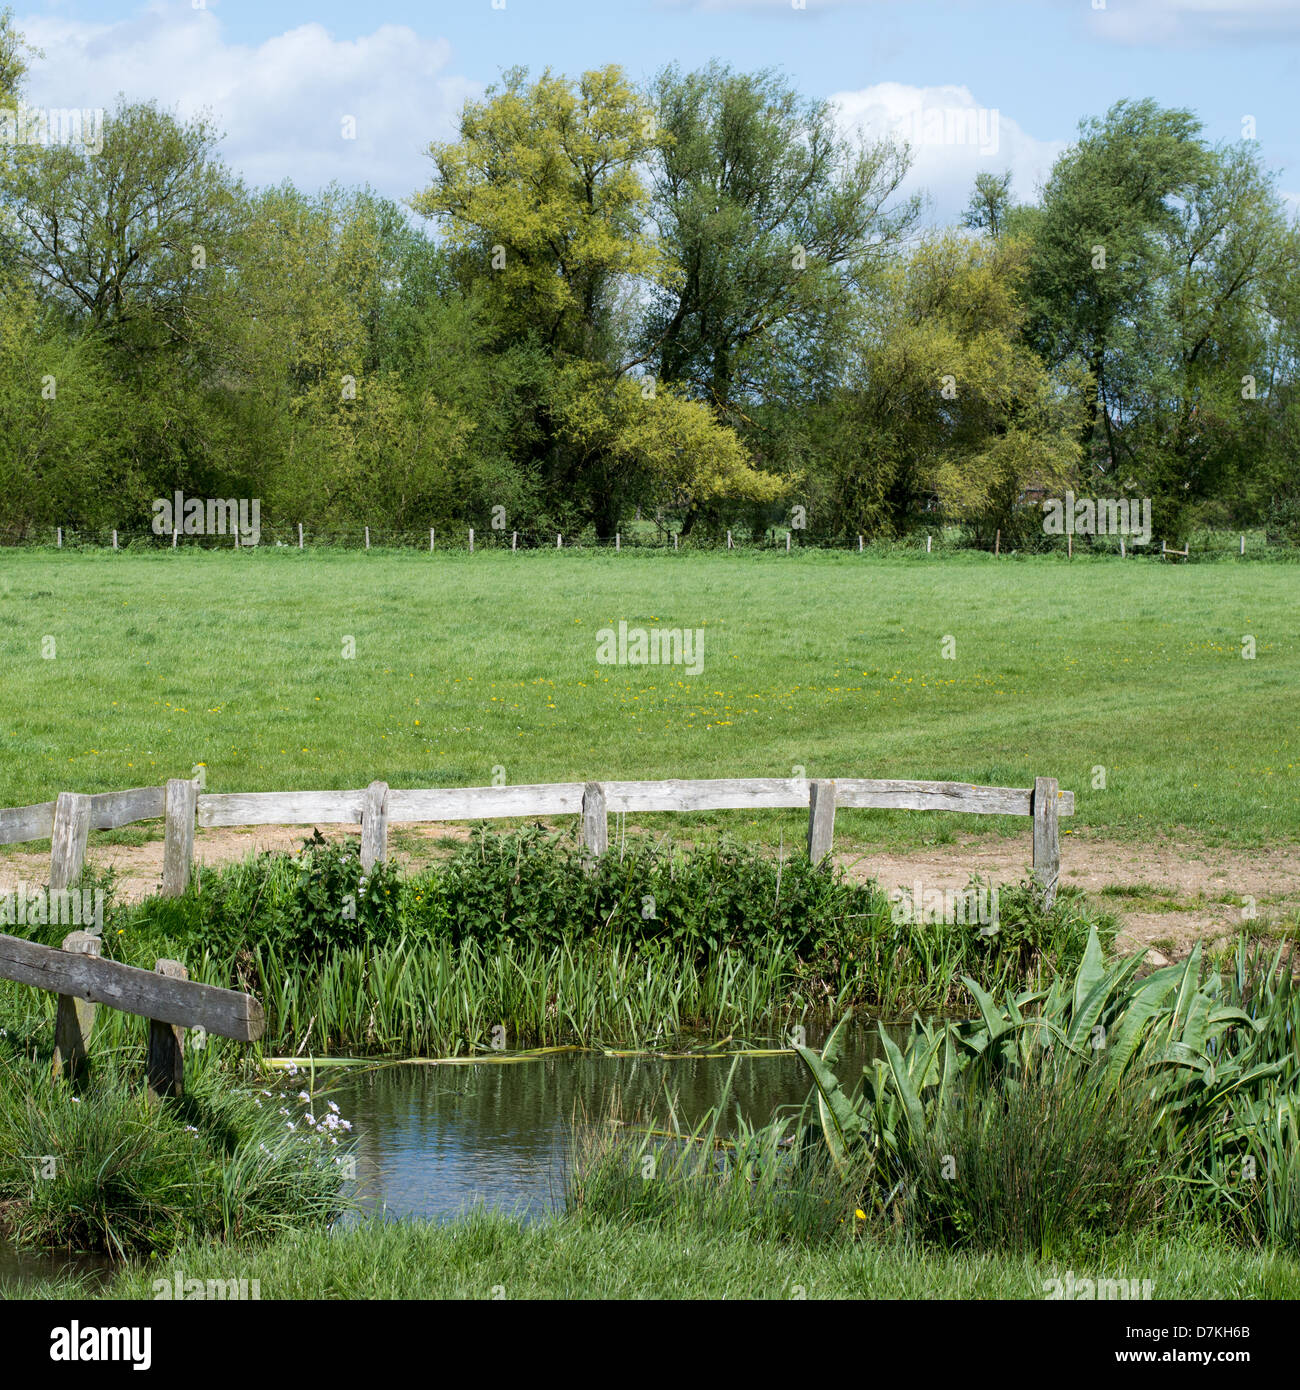 Ein kleiner Teich, bewacht von hölzernen Zäune, in einem Feld mit Bäumen im Hintergrund. Stockfoto